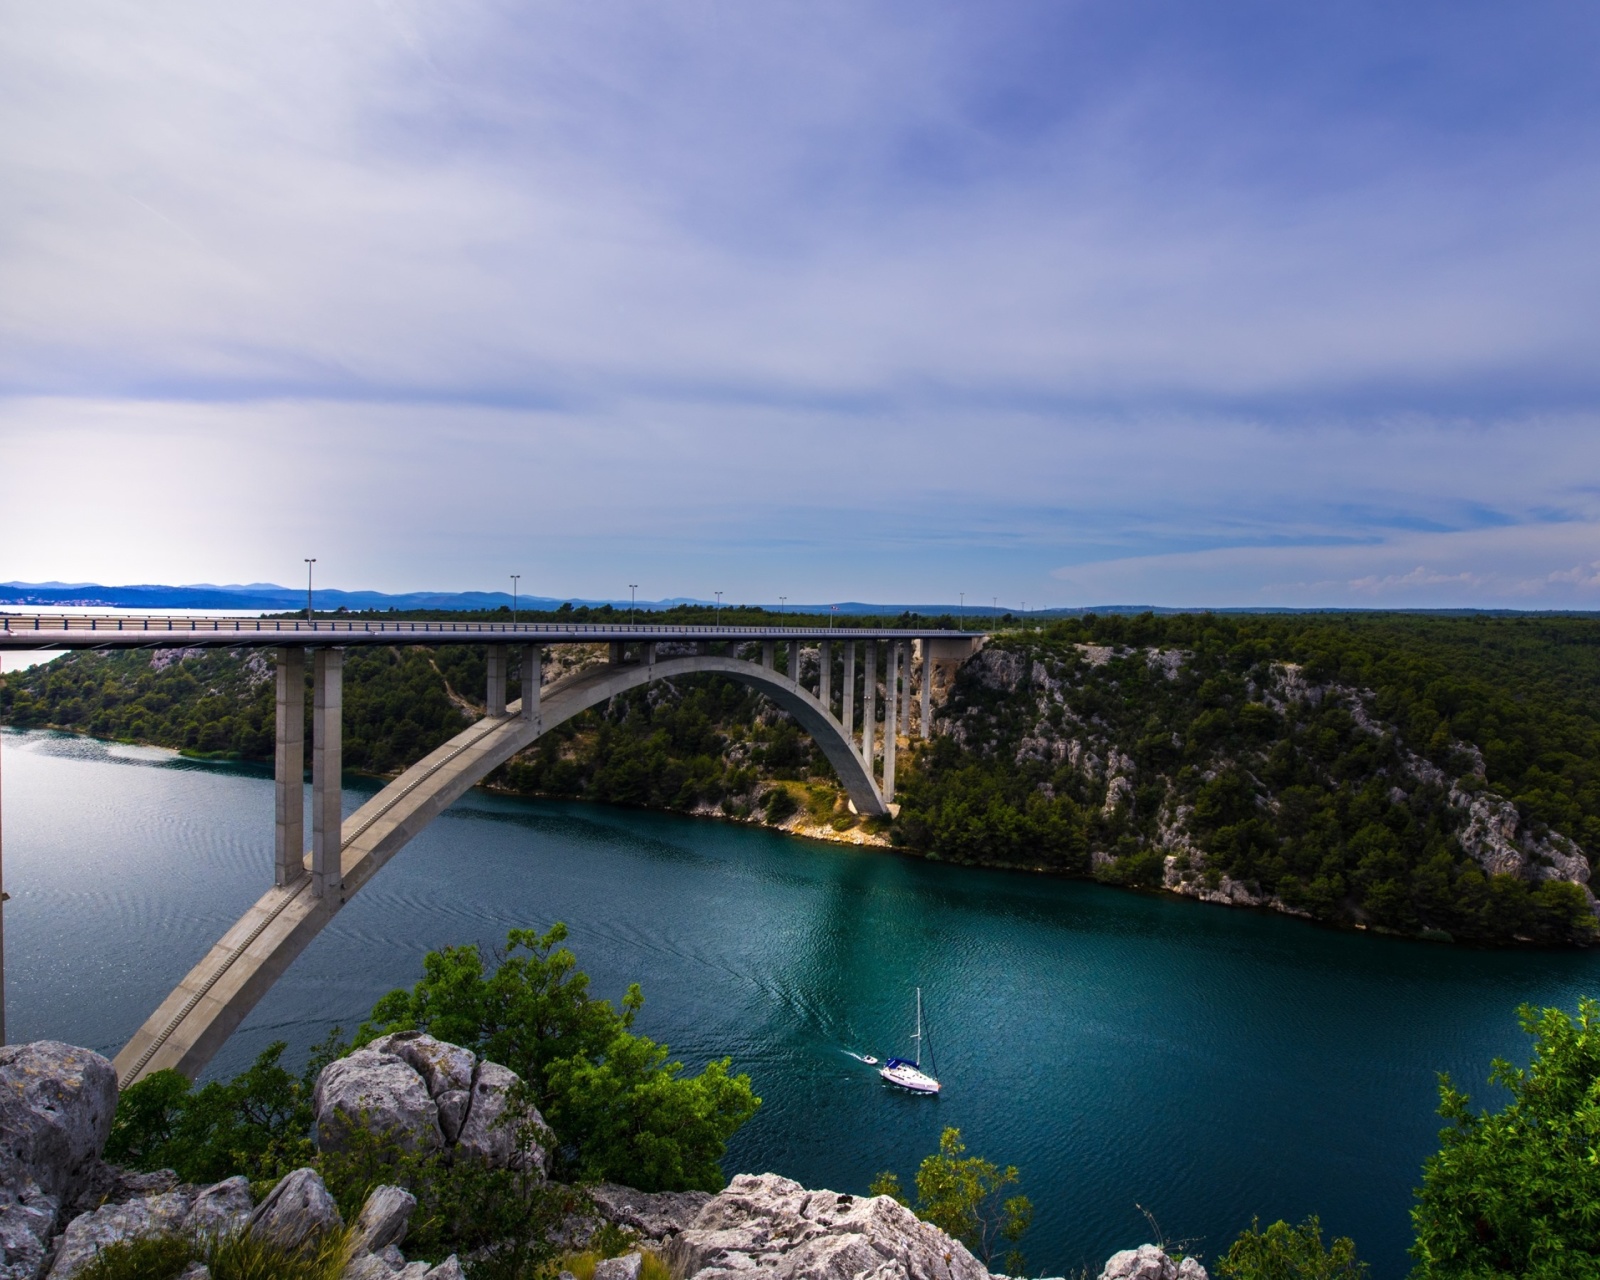 Sfondi Krka River Croatia 1600x1280